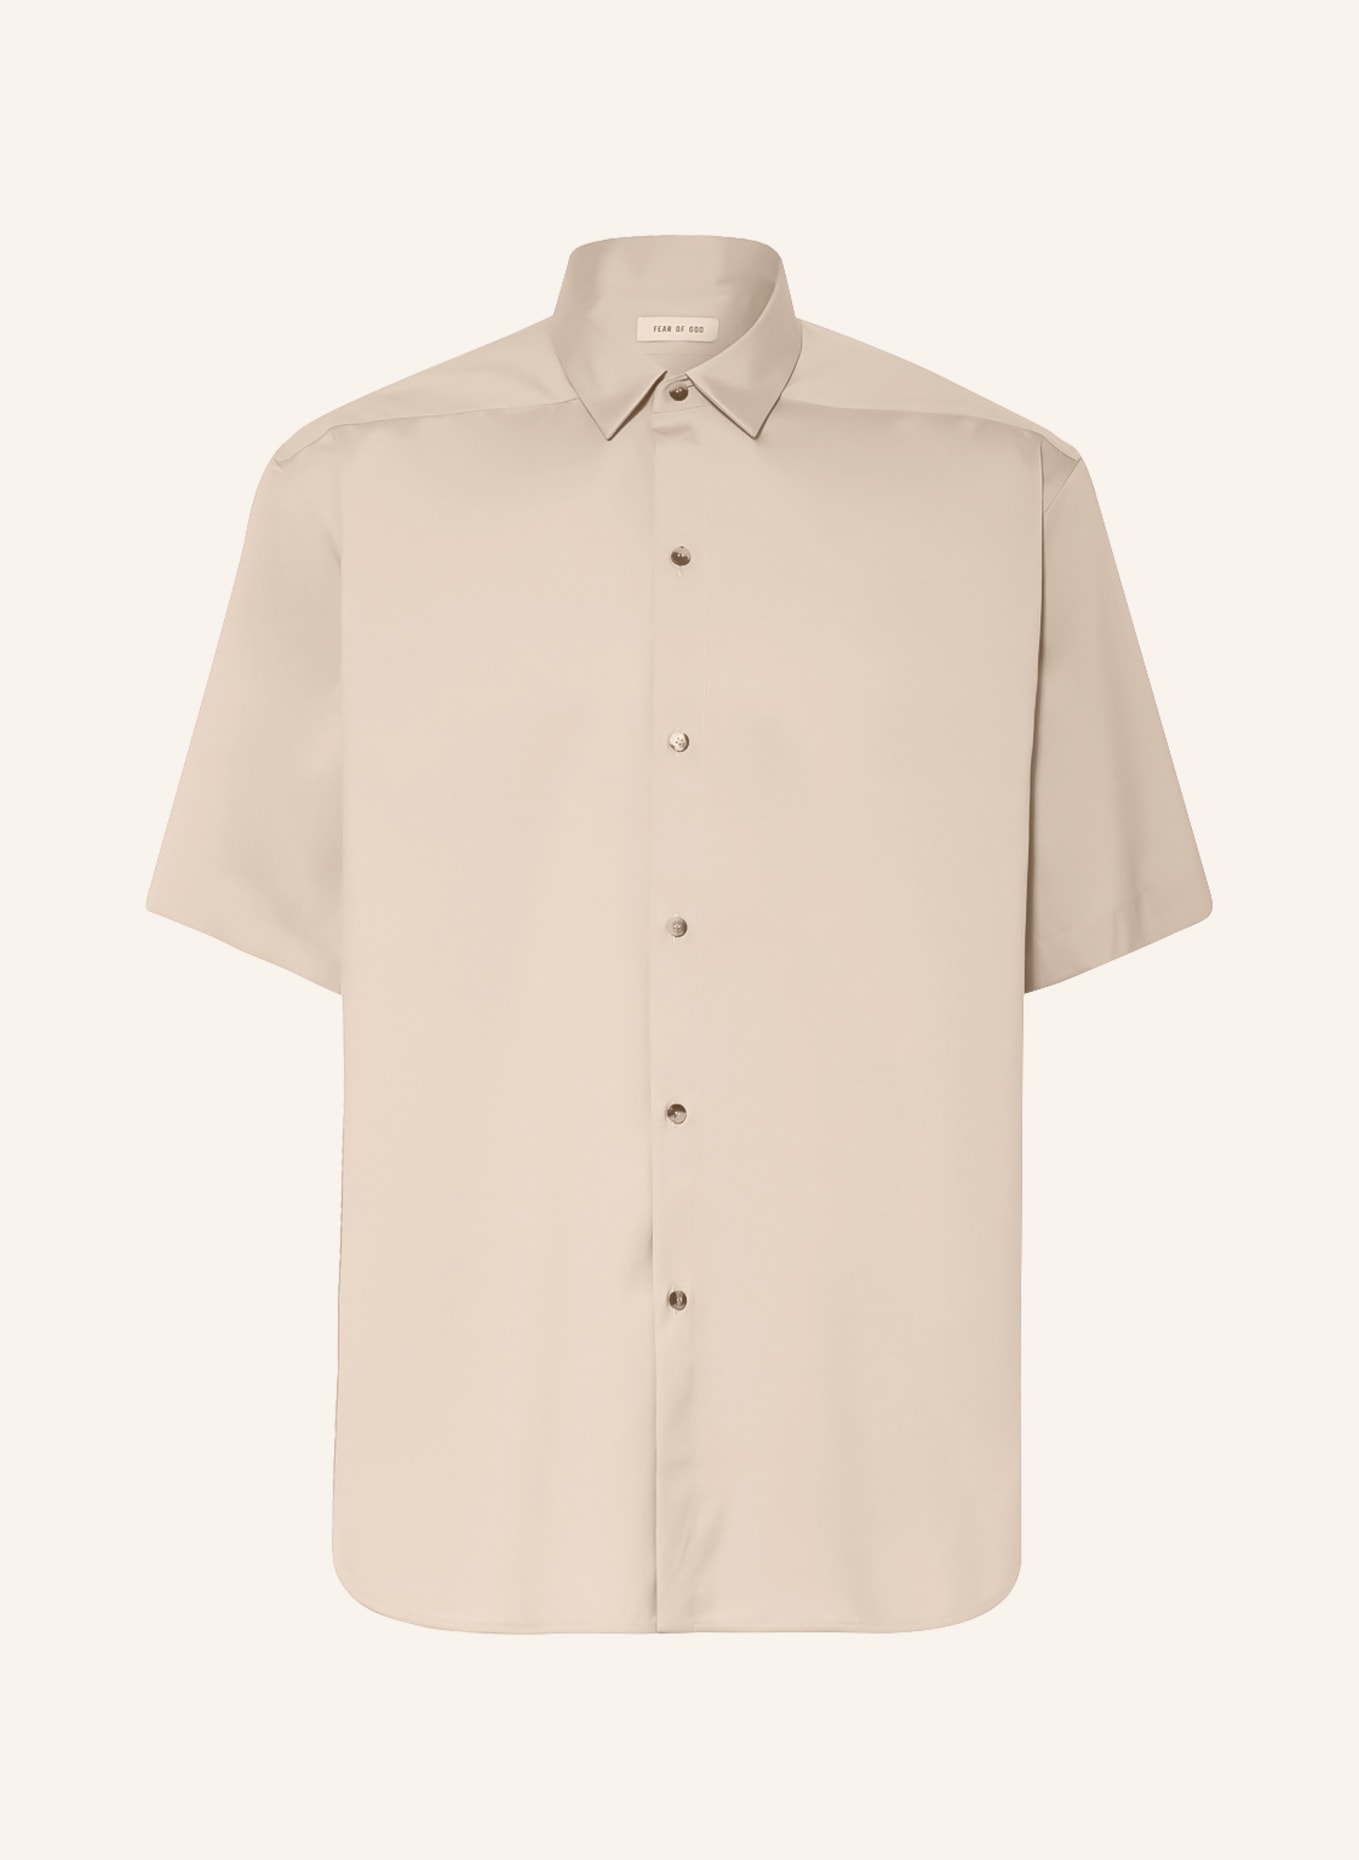 FEAR OF GOD Short sleeve shirt comfort fit, Color: BEIGE (Image 1)